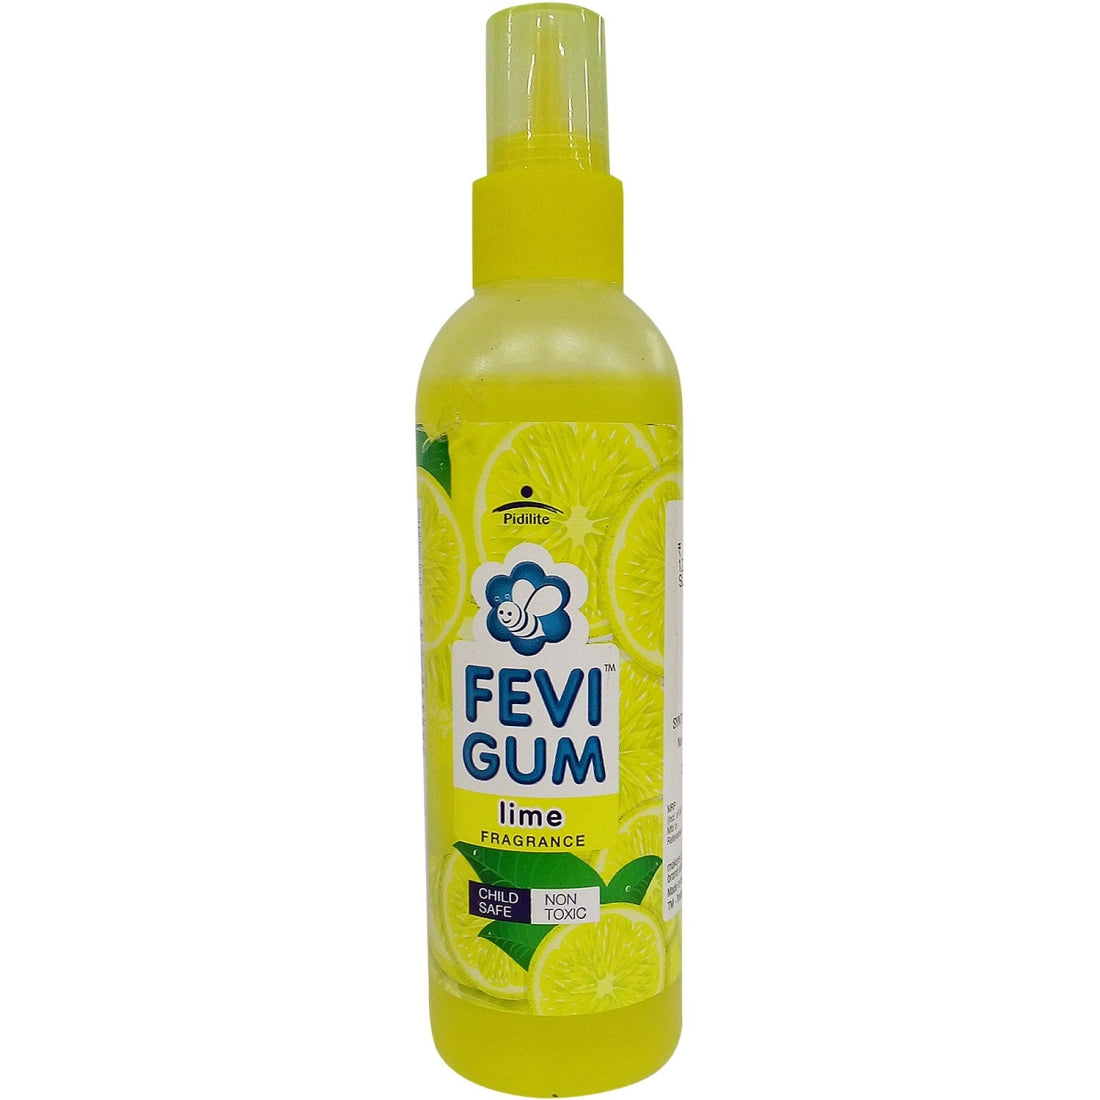 Fevigum 200ml - Synthetic Gum